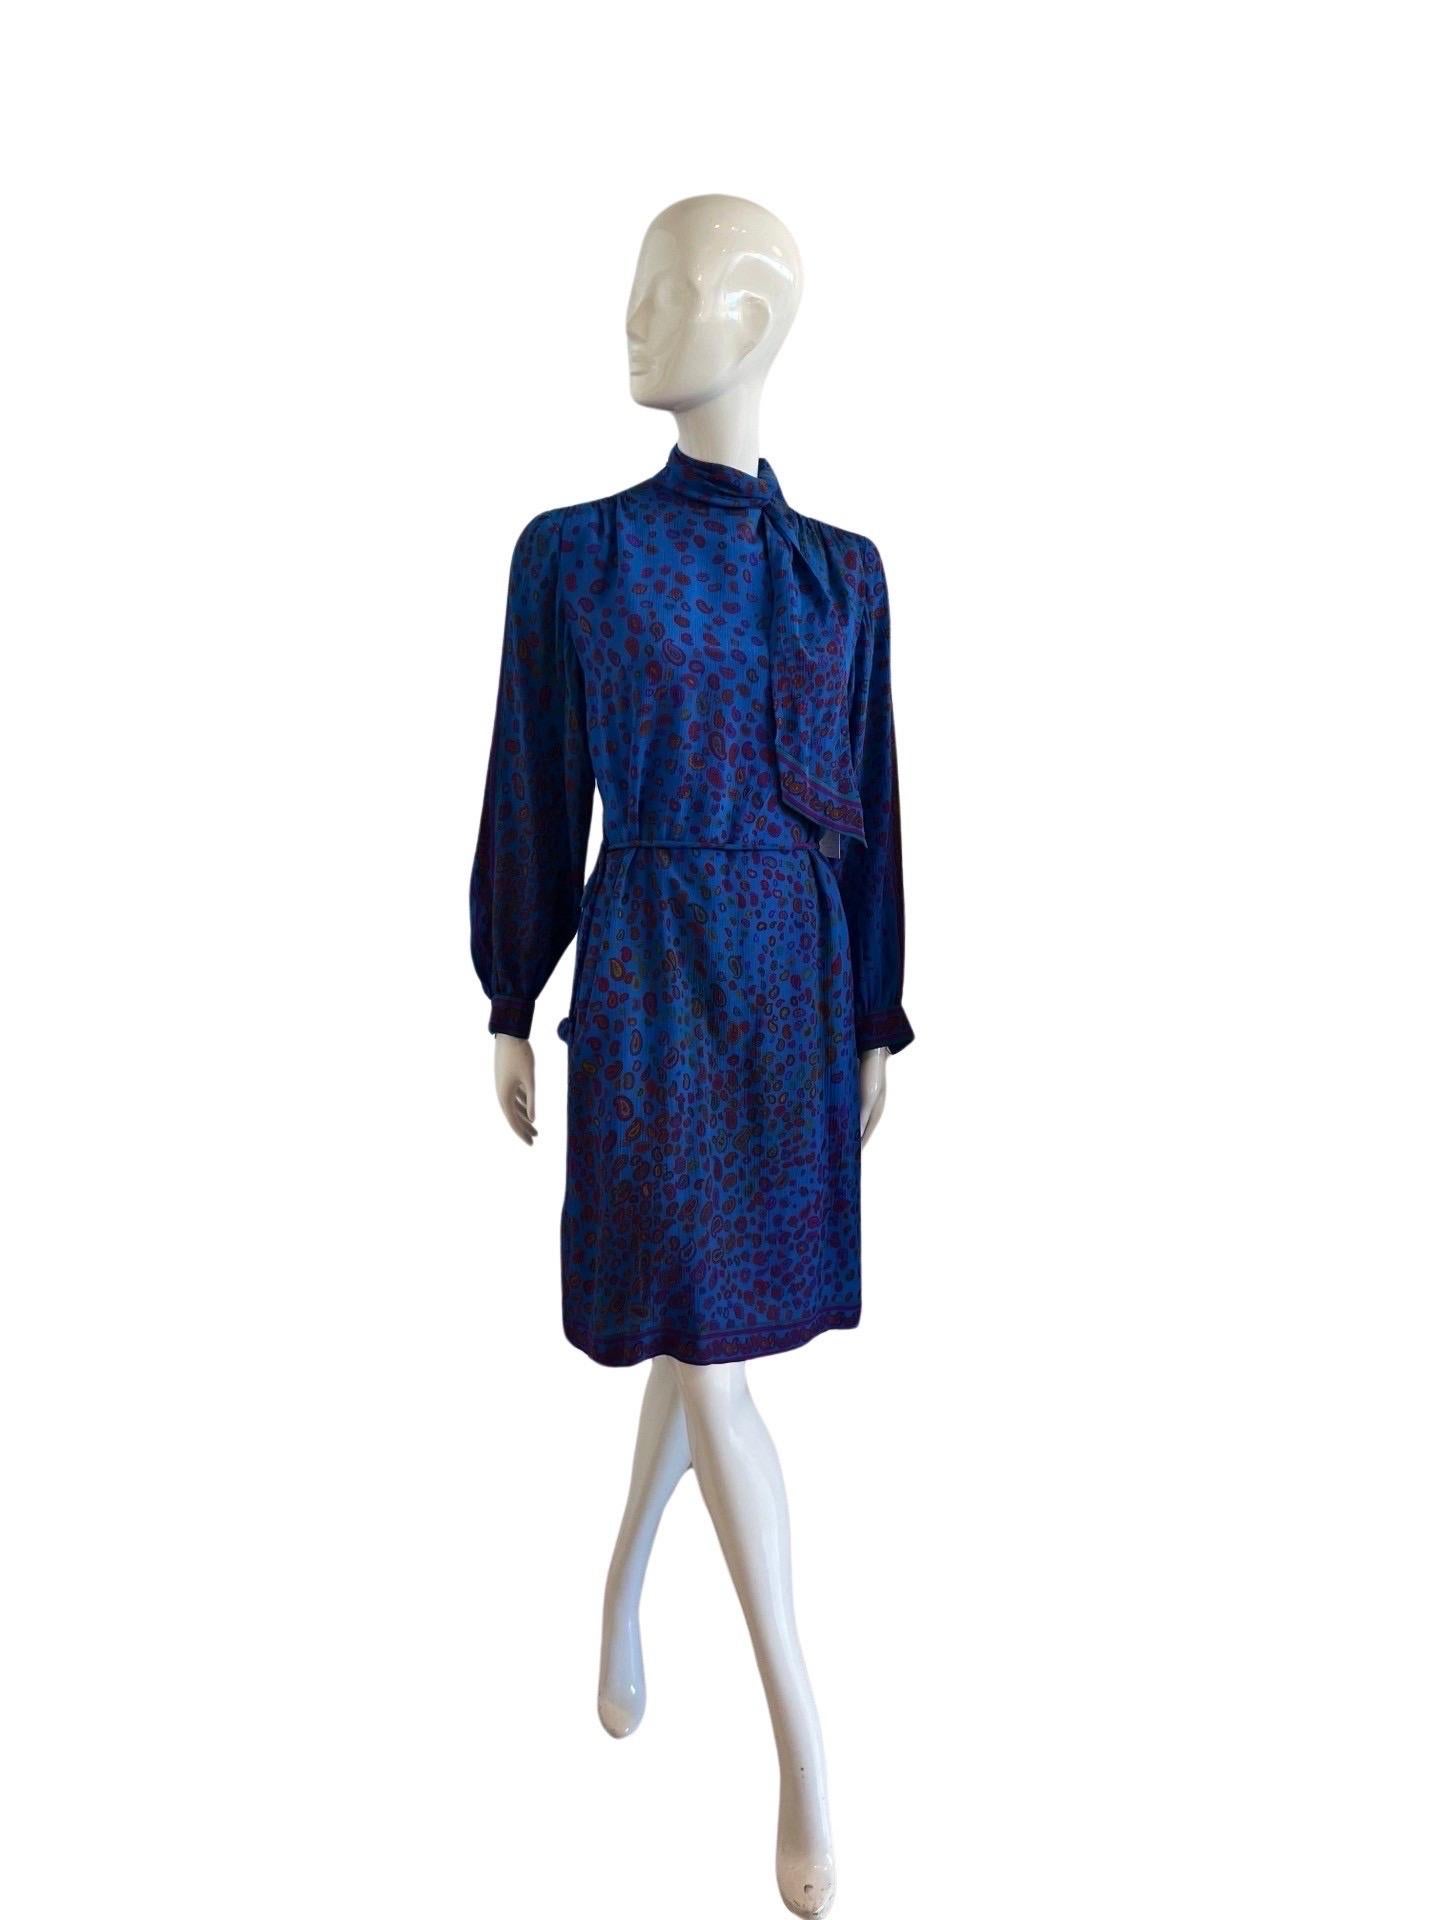 Superbe ligne Leonard Paris Studio des années 1970 dans un bleu électrique profond sur crêpe de soie avec un imprimé cachemire fuscia et bordeaux.  La robe a un col haut  et un foulard à nouer sur le côté du cou.  La robe est zippée dans le dos.  La